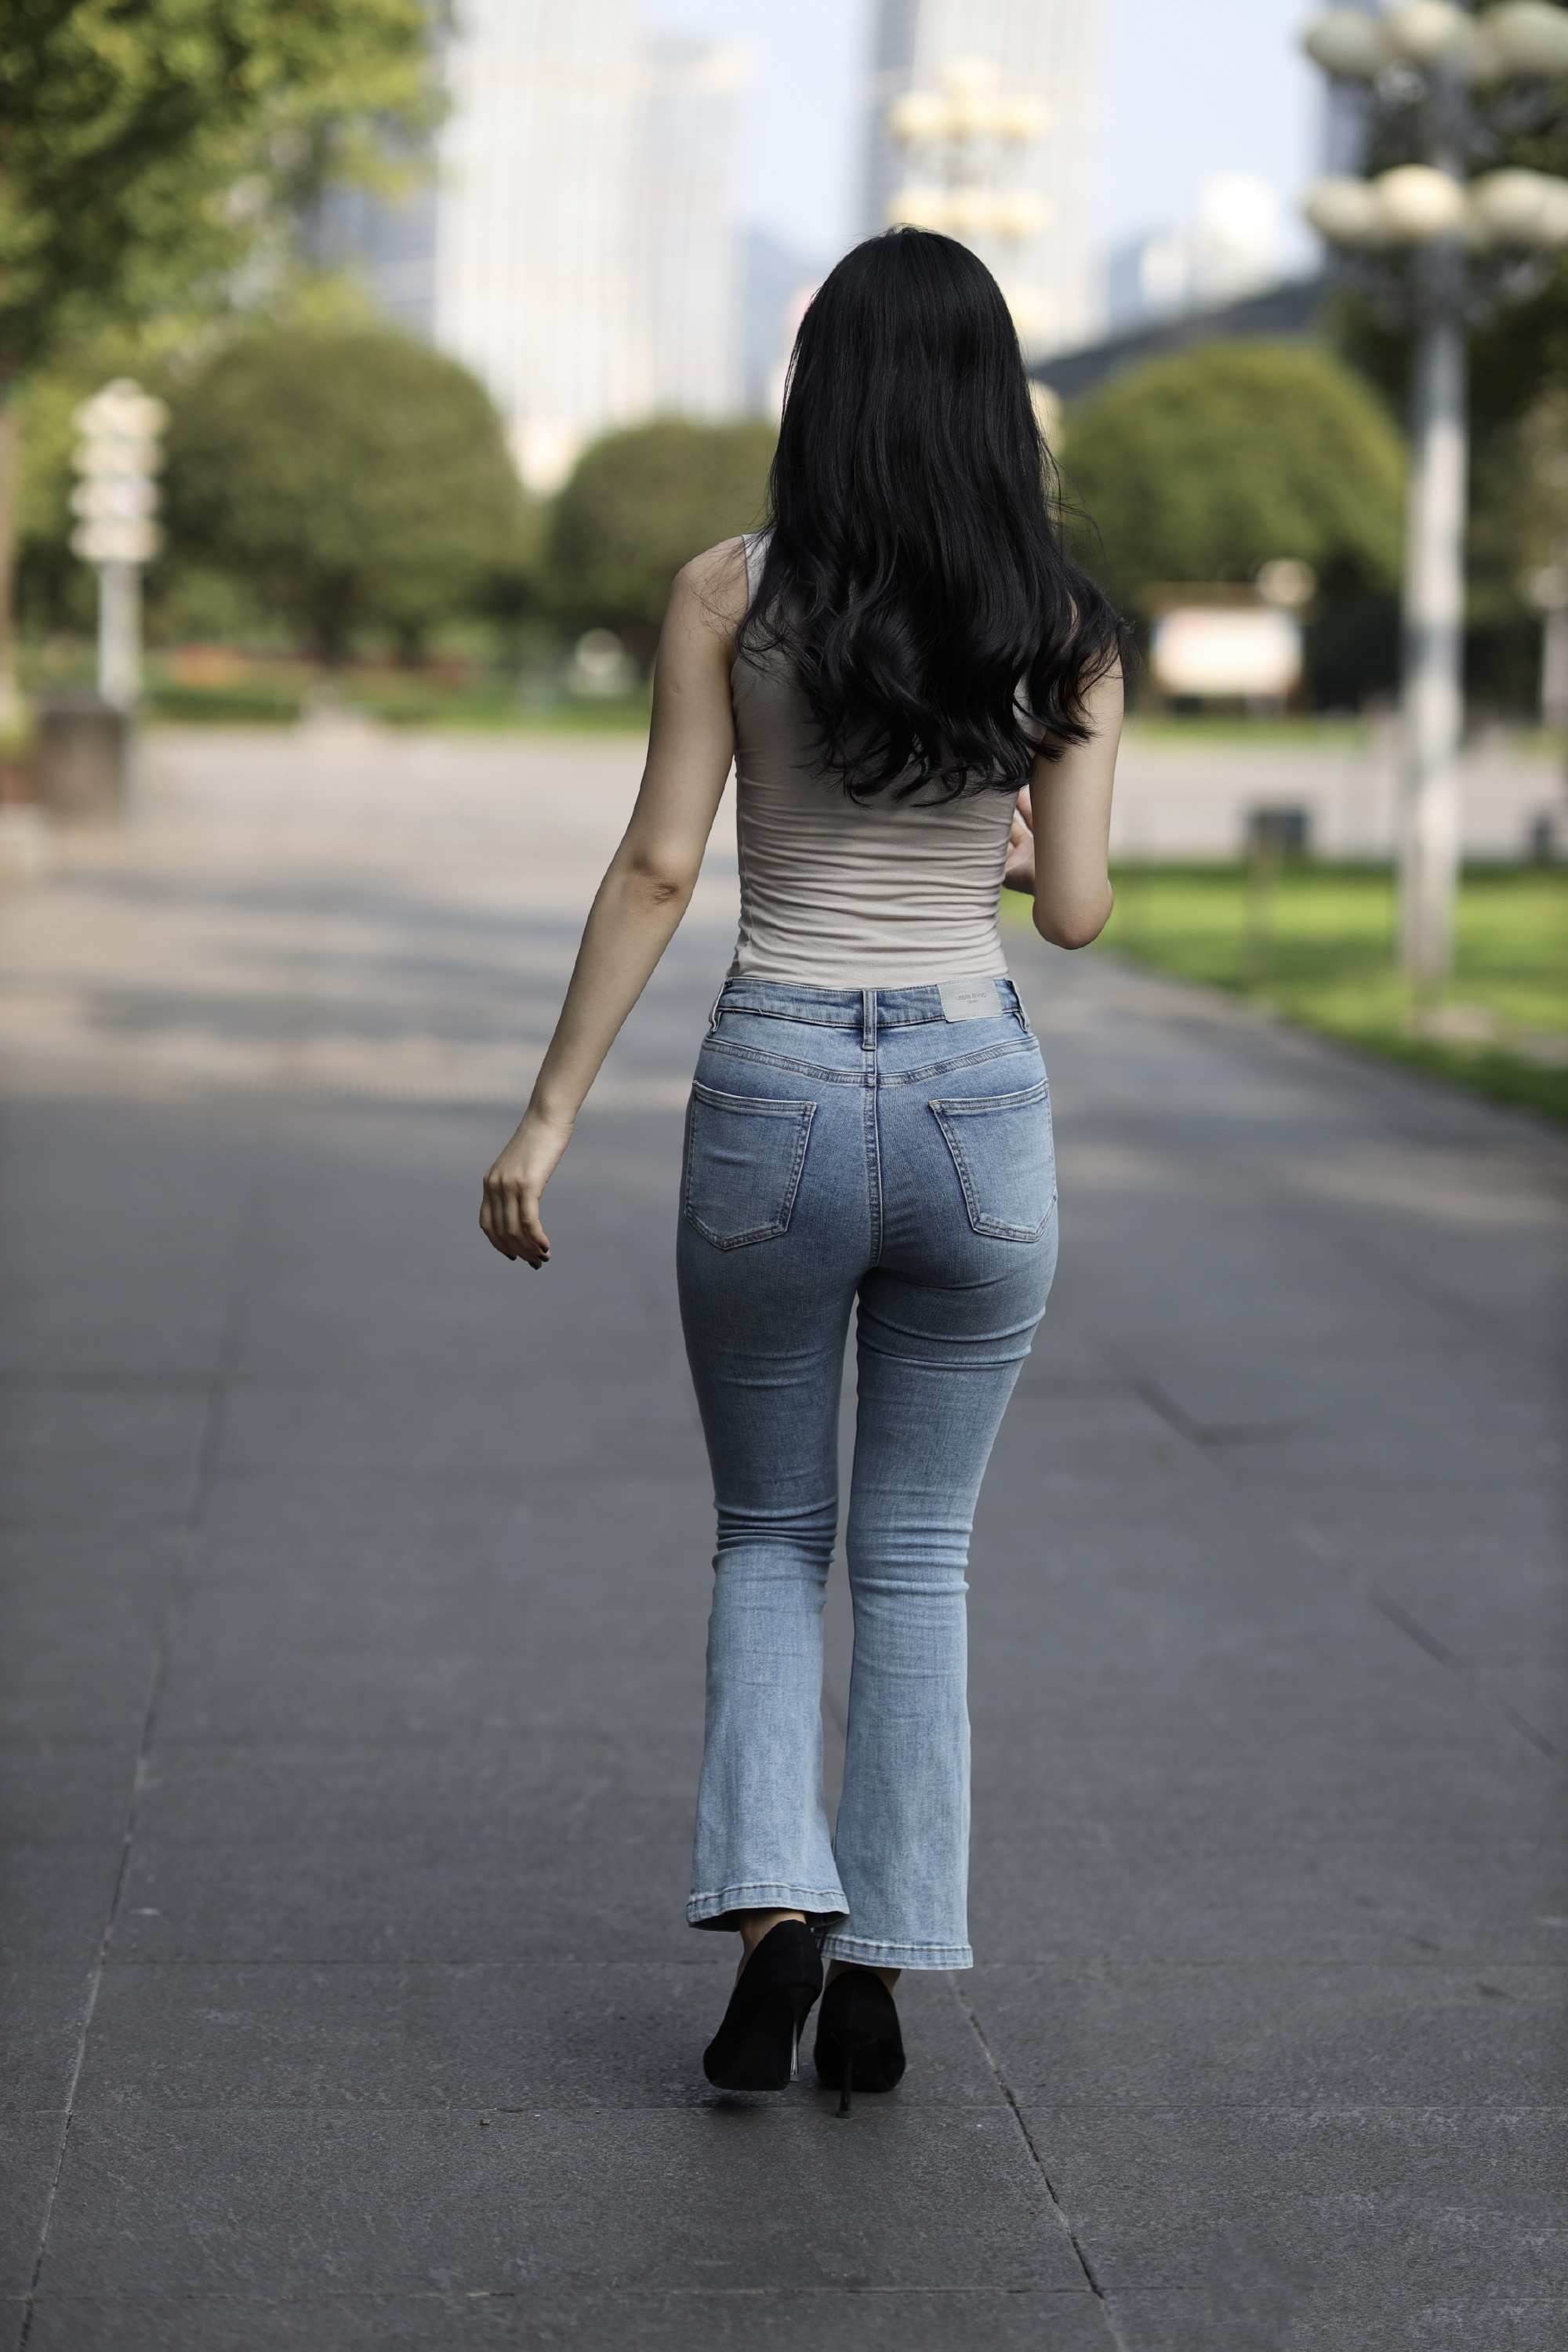 牛仔裤女背影街拍图片